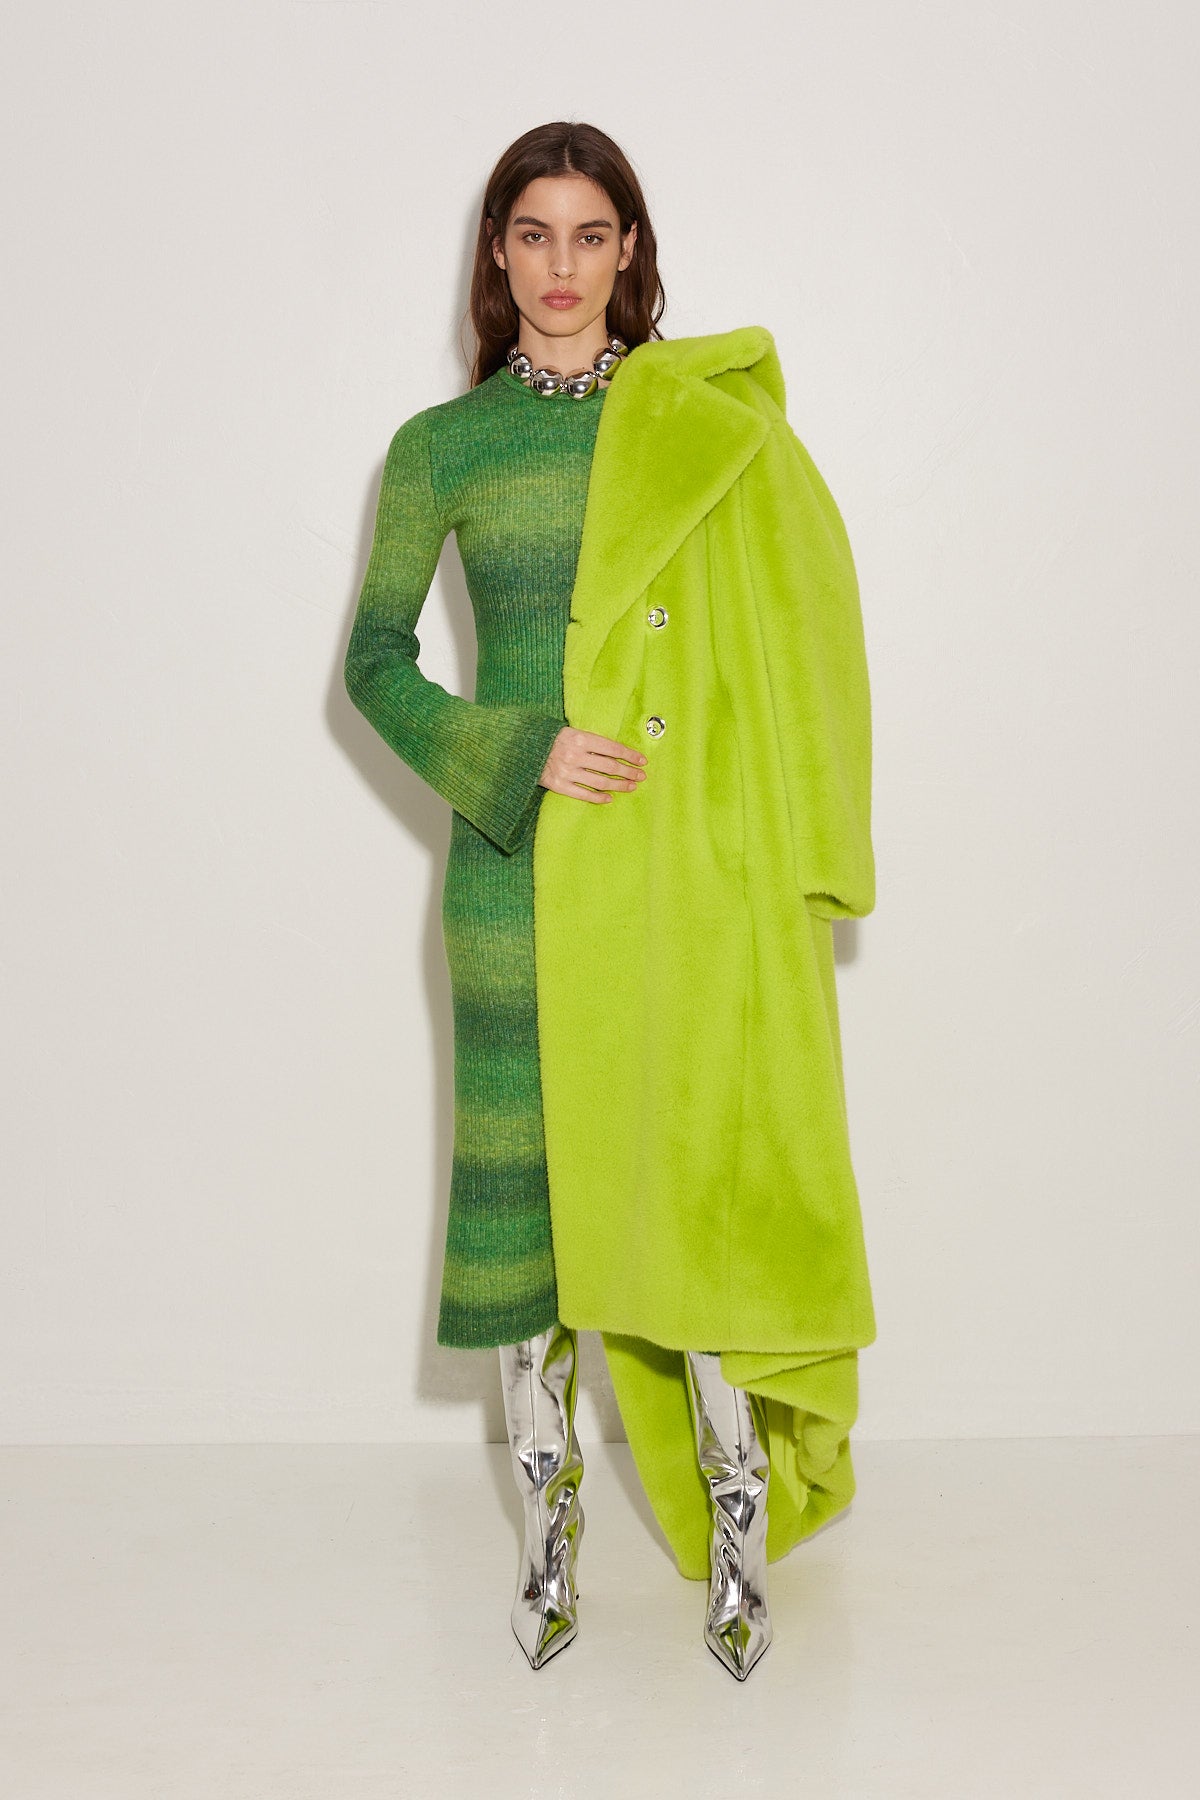 Axon Dress in Gummy Green Multi